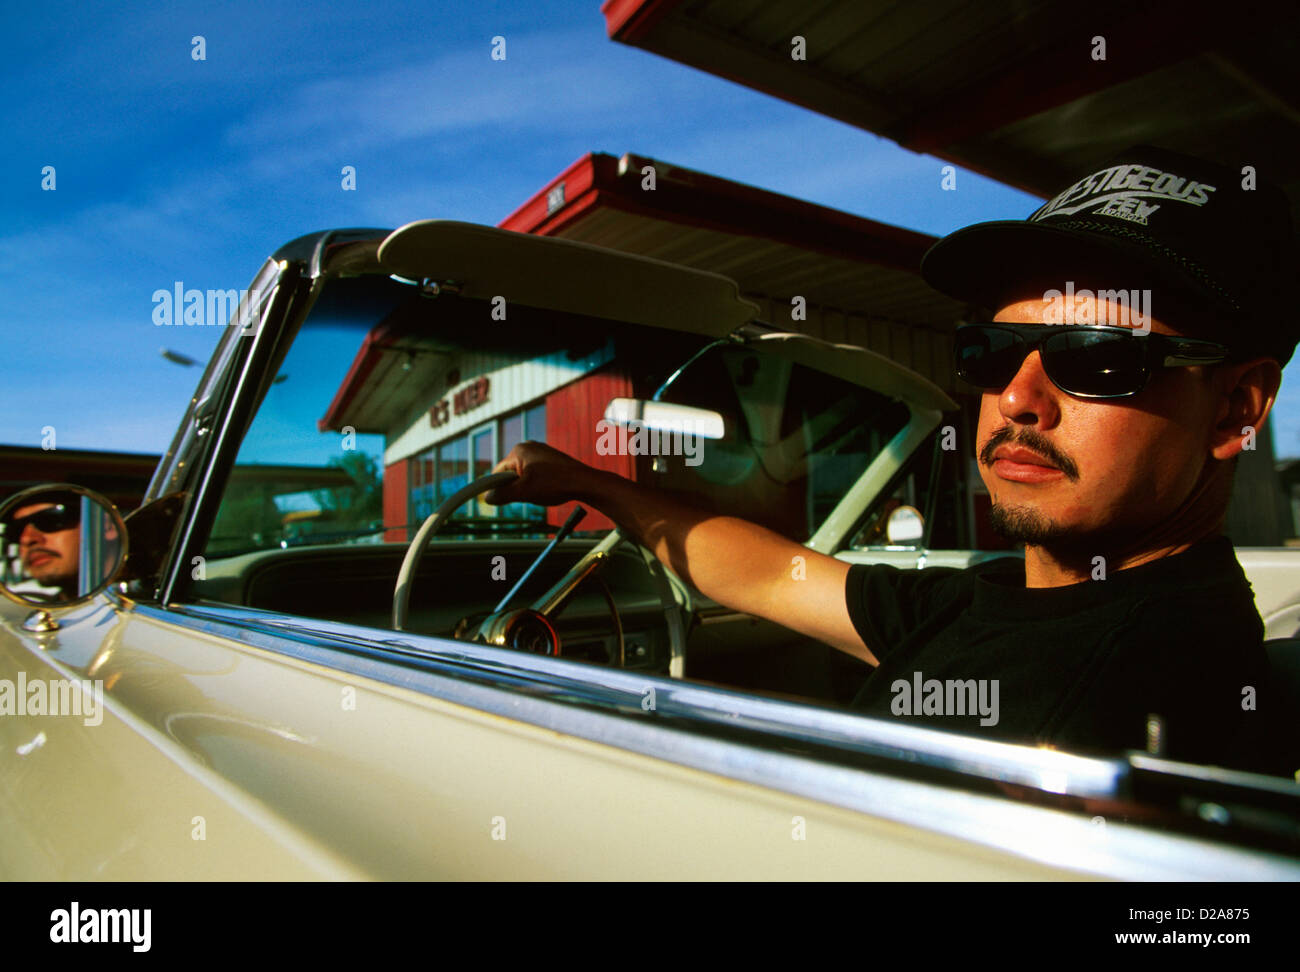 Nuovo Messico, Espanola, l uomo con i baffi e barba, nel sedile del conducente di 1964 Chevrolet Impala. Uso limitato Foto Stock